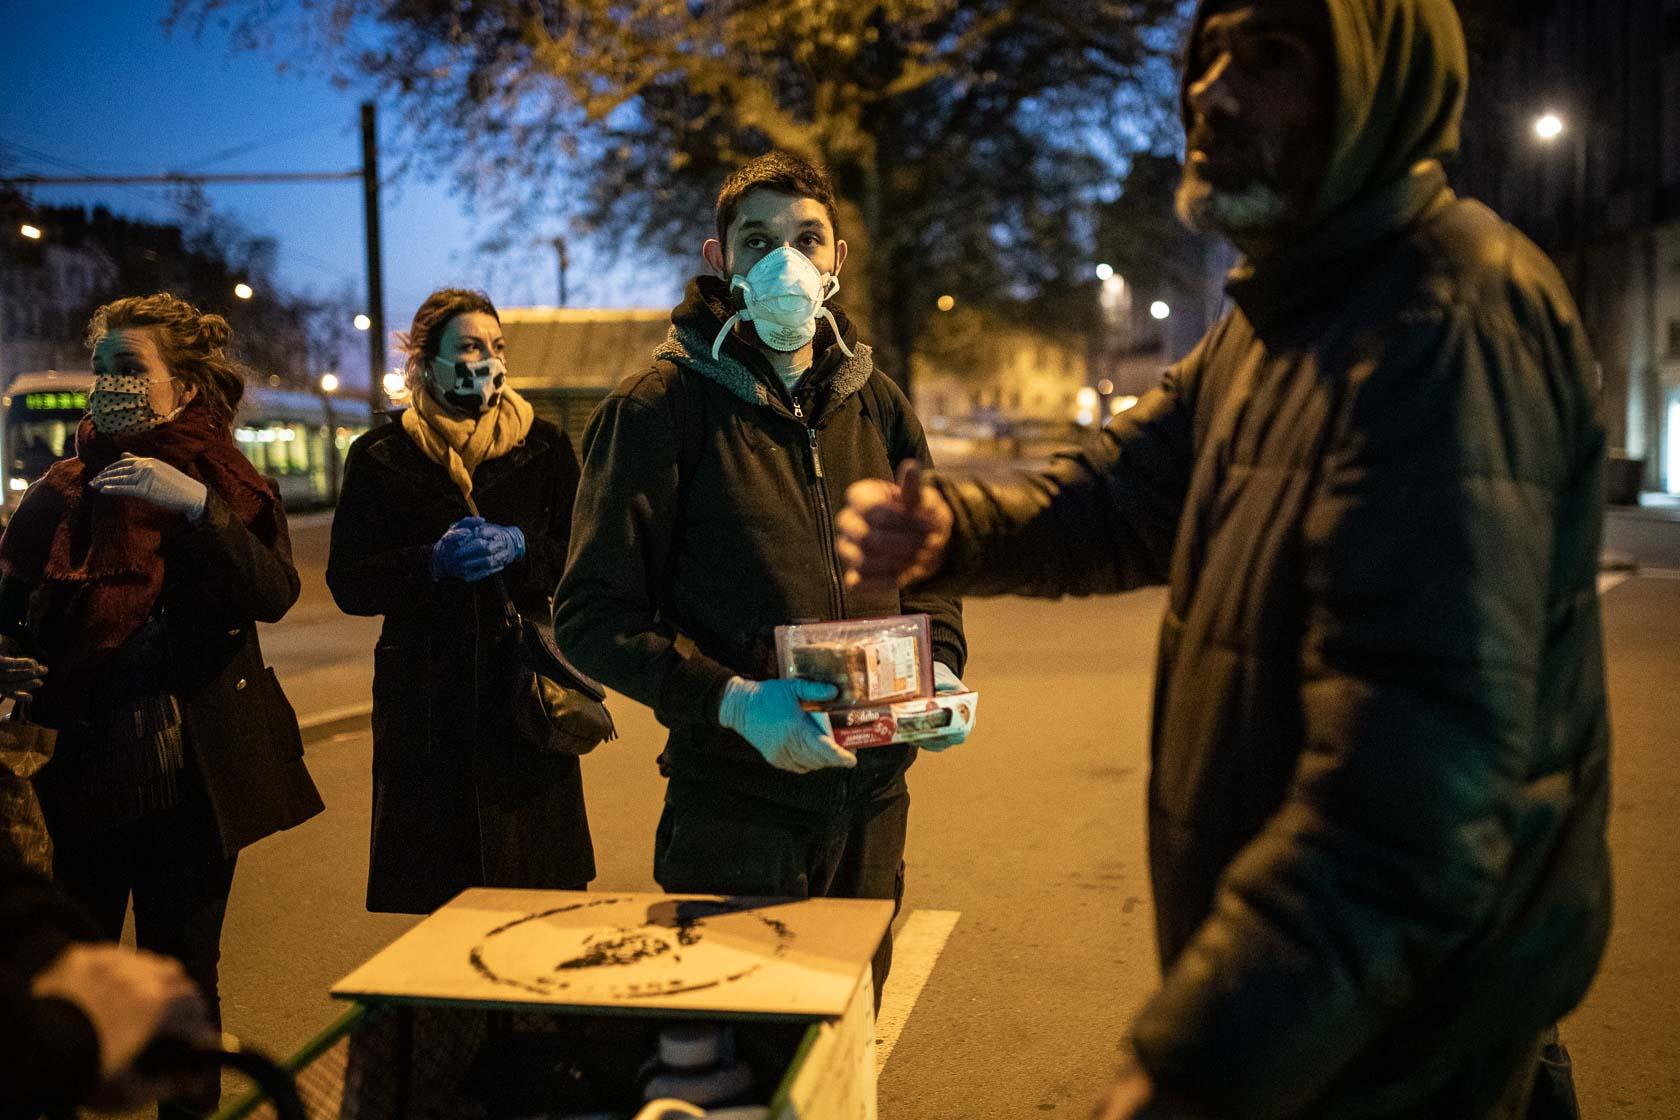 Un groupe de jeunes bénévoles effectue une maraude pour distribuer de la nourriture aux SDF durant le premier confinement dû à l'épidémie de Covid-19 Nantes, France - Mars 2020